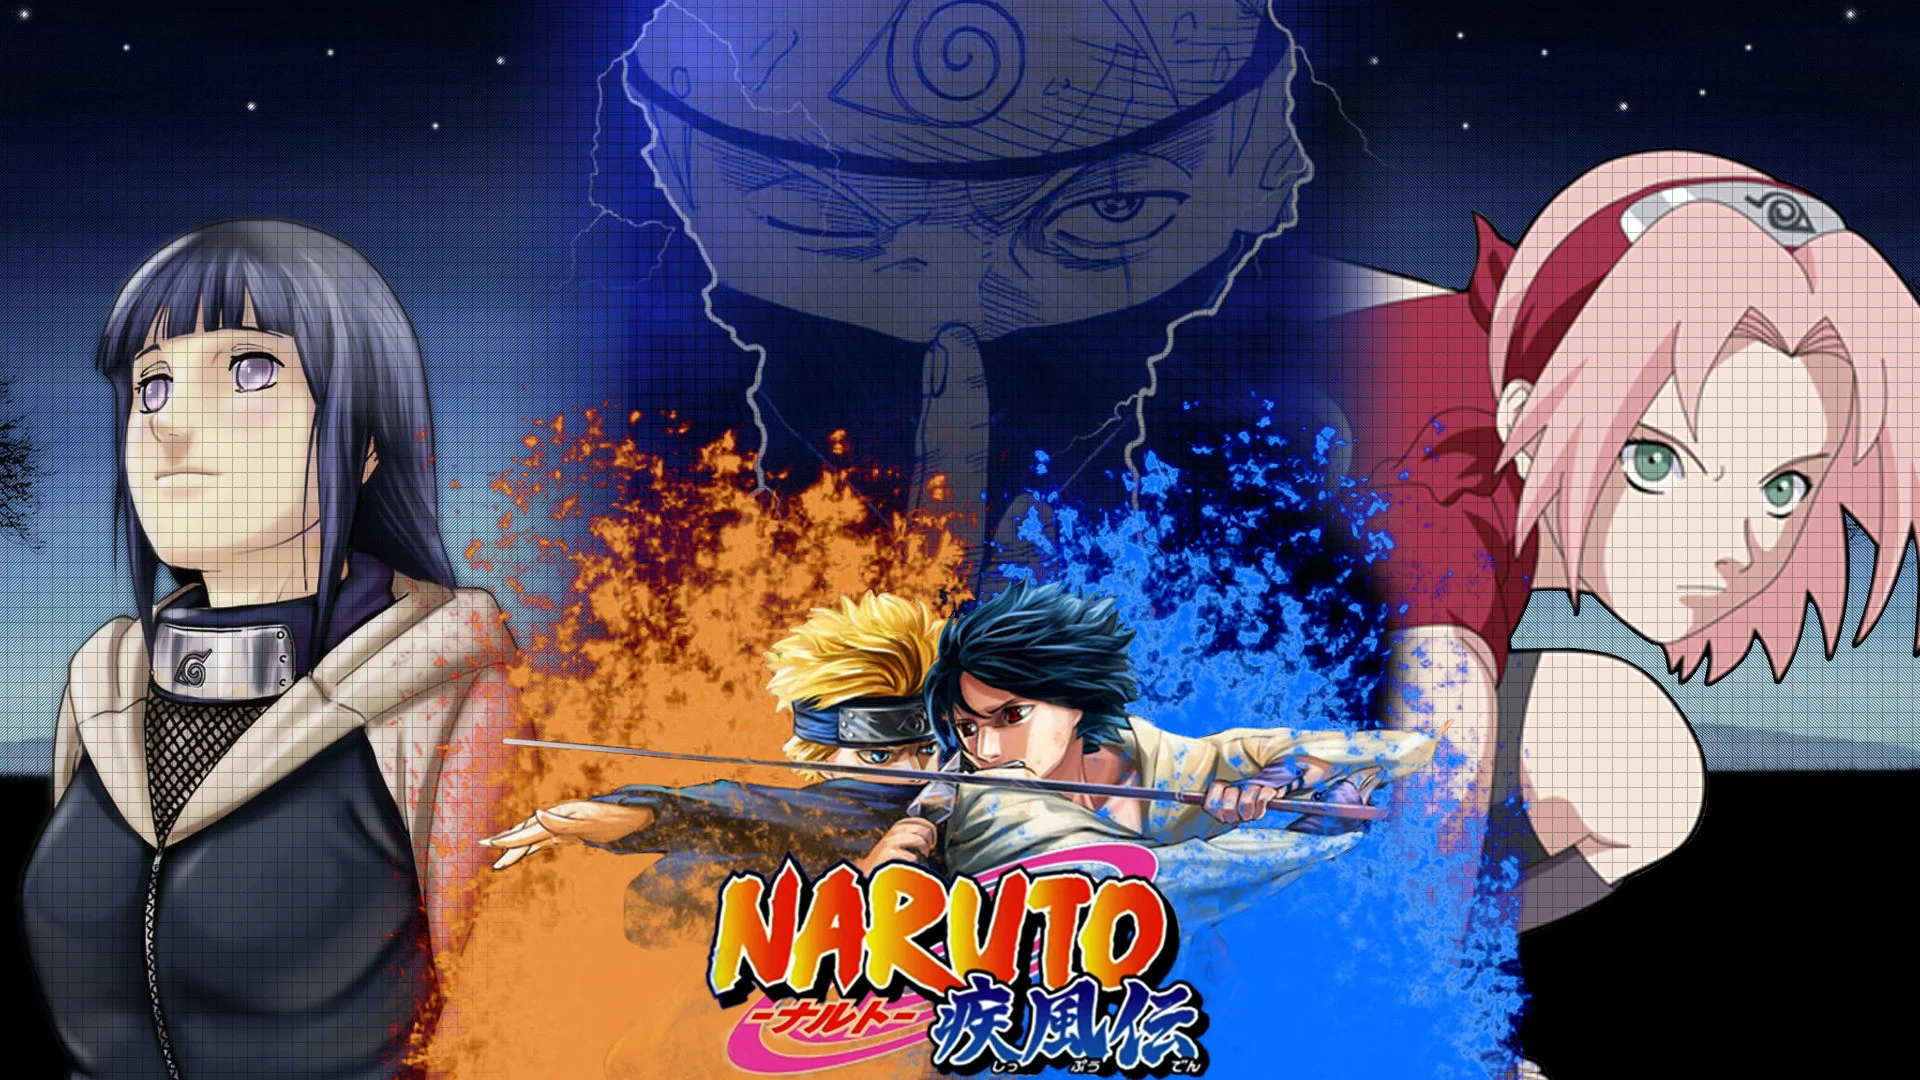 Hình nền Naruto vs Sasuke sẽ đưa bạn đến trận chiến đỉnh cao giữa hai nhân vật chính trong anime Naruto. Với chất lượng hình ảnh sắc nét và độ phân giải cao, hình nền này chắc chắn sẽ làm bạn phấn khích và muốn xem lại trận chiến đầy kịch tính này lần nữa!